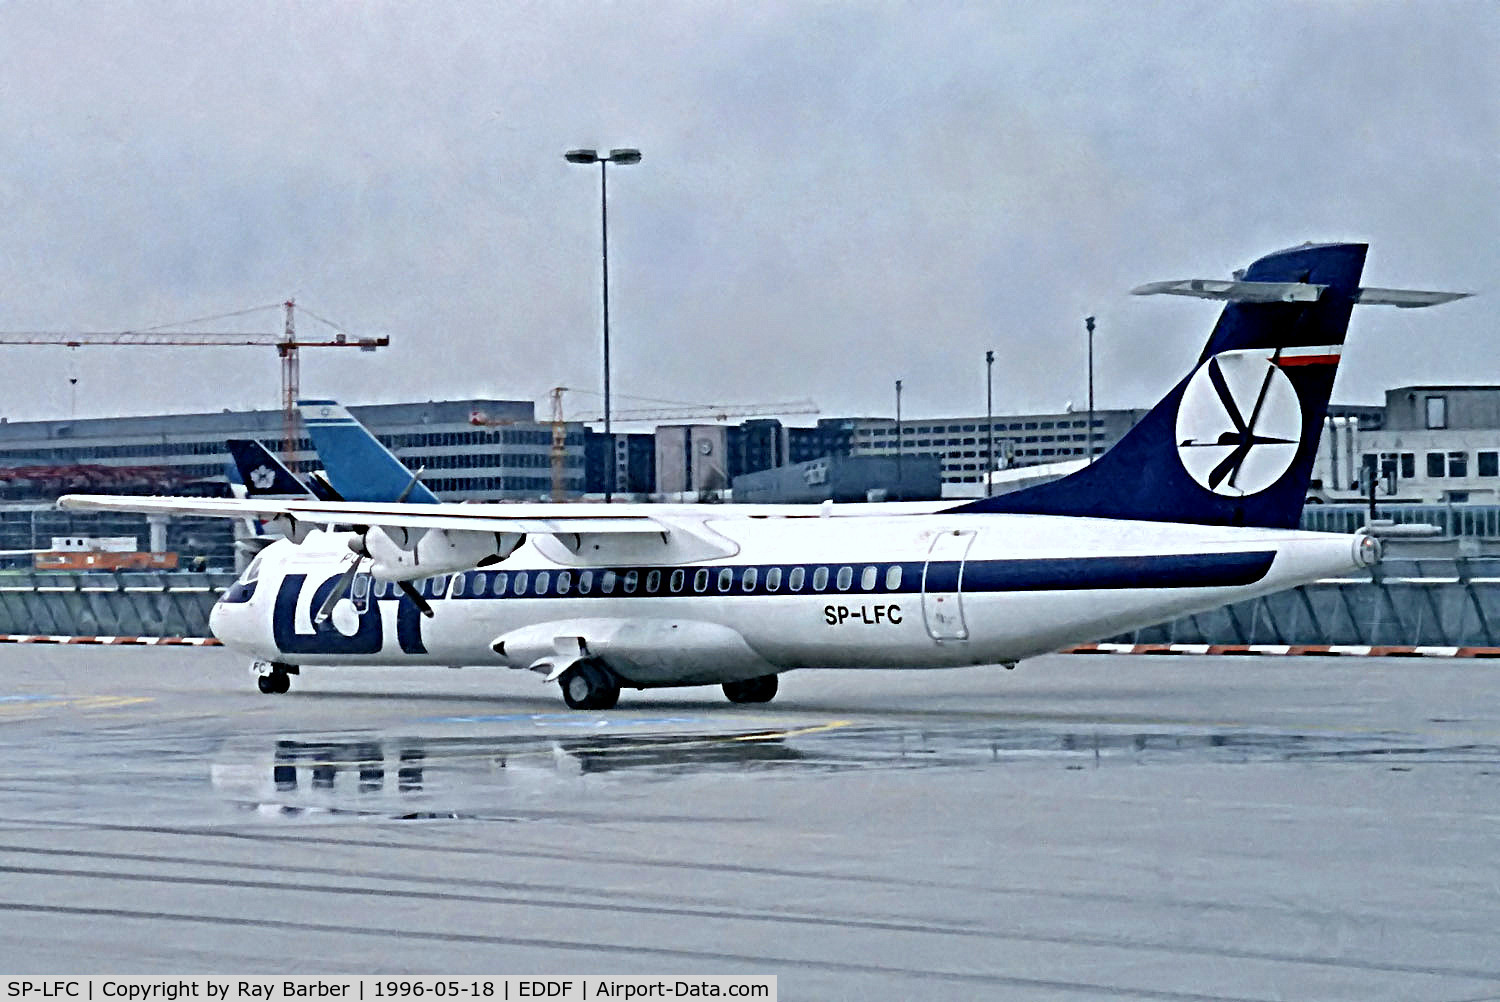 SP-LFC, 1992 ATR 72-202 C/N 272, SP-LFC   Aerospatiale ATR-72-202 [272] (LOT Polish Airlines) Frankfurt Int'l~D 18/05/1996